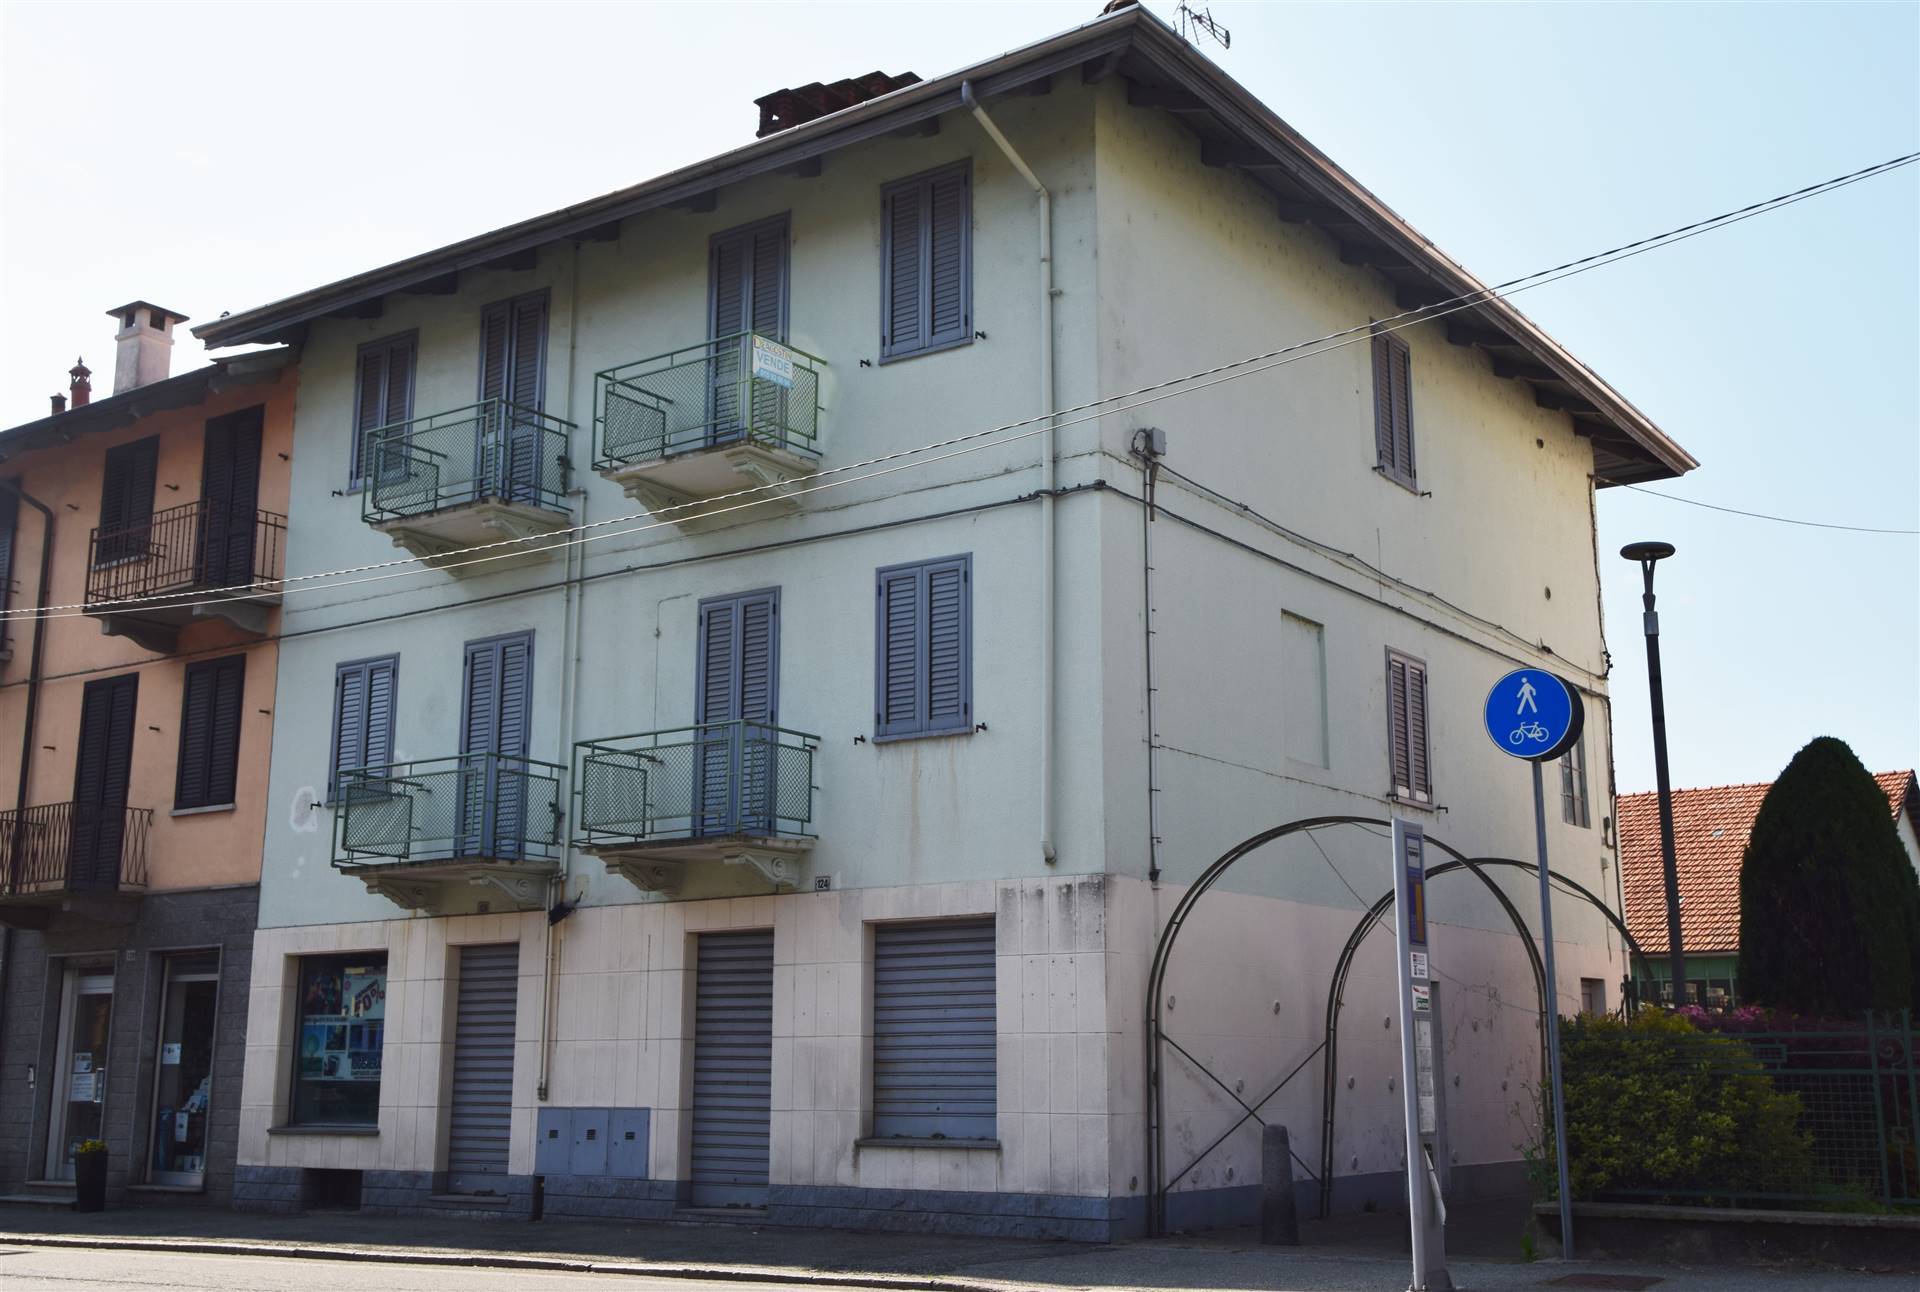 Negozio / Locale in vendita a Vigliano Biellese, 2 locali, prezzo € 25.000 | CambioCasa.it